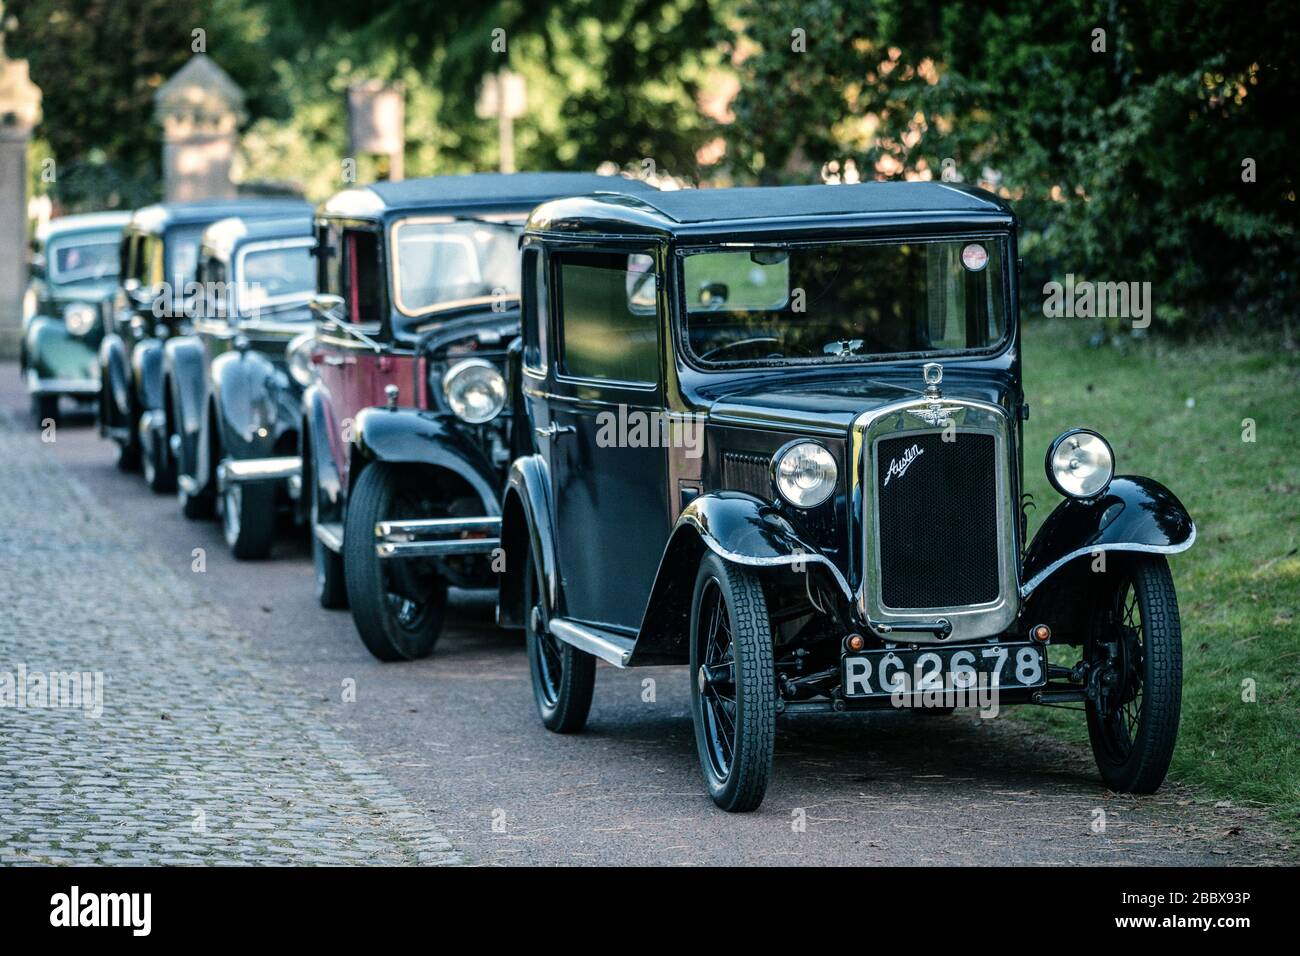 Une gamme de voitures anciennes dirigées par une AUSTIN Seven RN BOX SALOON RG 2678 de 1932, l'événement de la station de pompage de Papplewick, Angleterre Banque D'Images